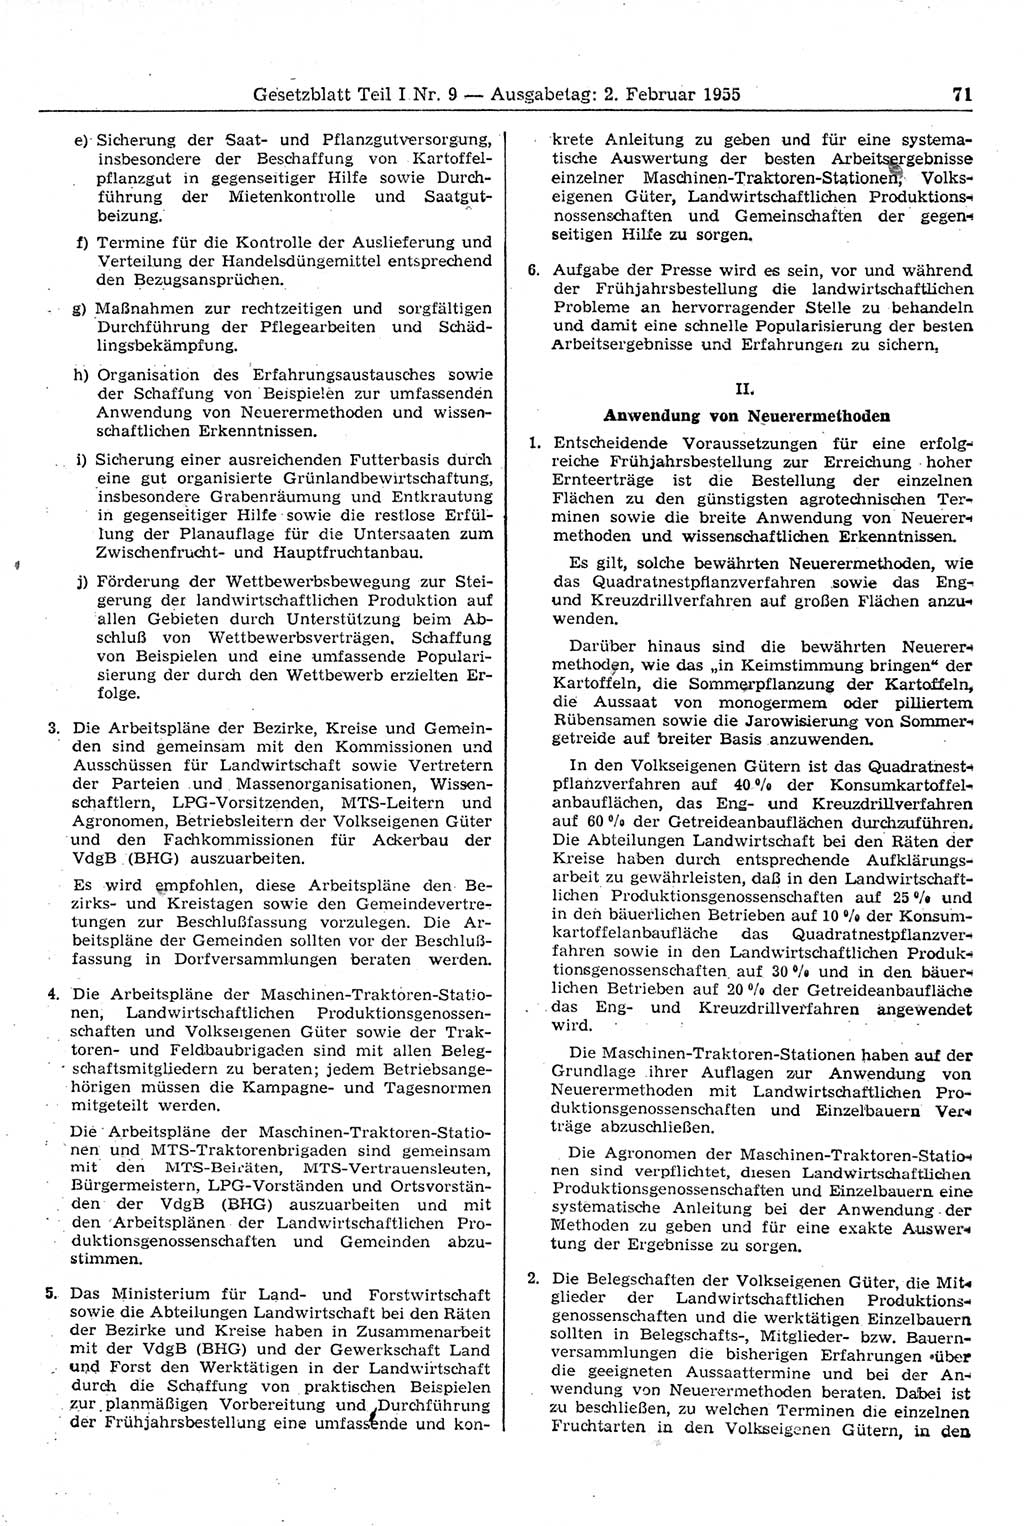 Gesetzblatt (GBl.) der Deutschen Demokratischen Republik (DDR) Teil Ⅰ 1955, Seite 71 (GBl. DDR Ⅰ 1955, S. 71)